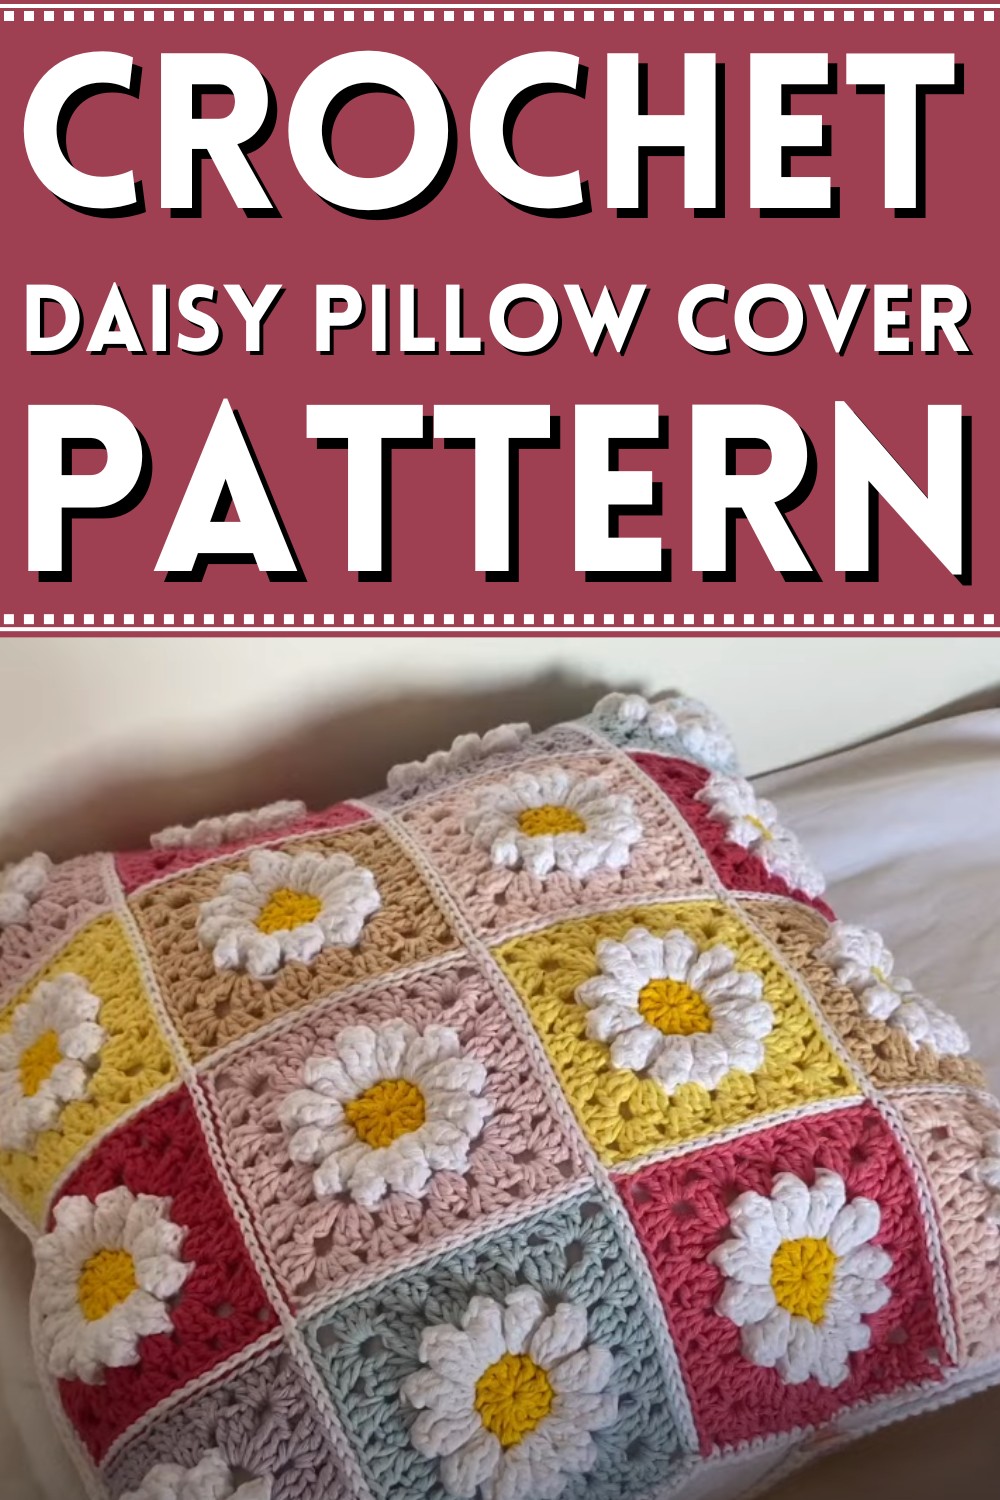 Crochet a Daisy Pillow Cover